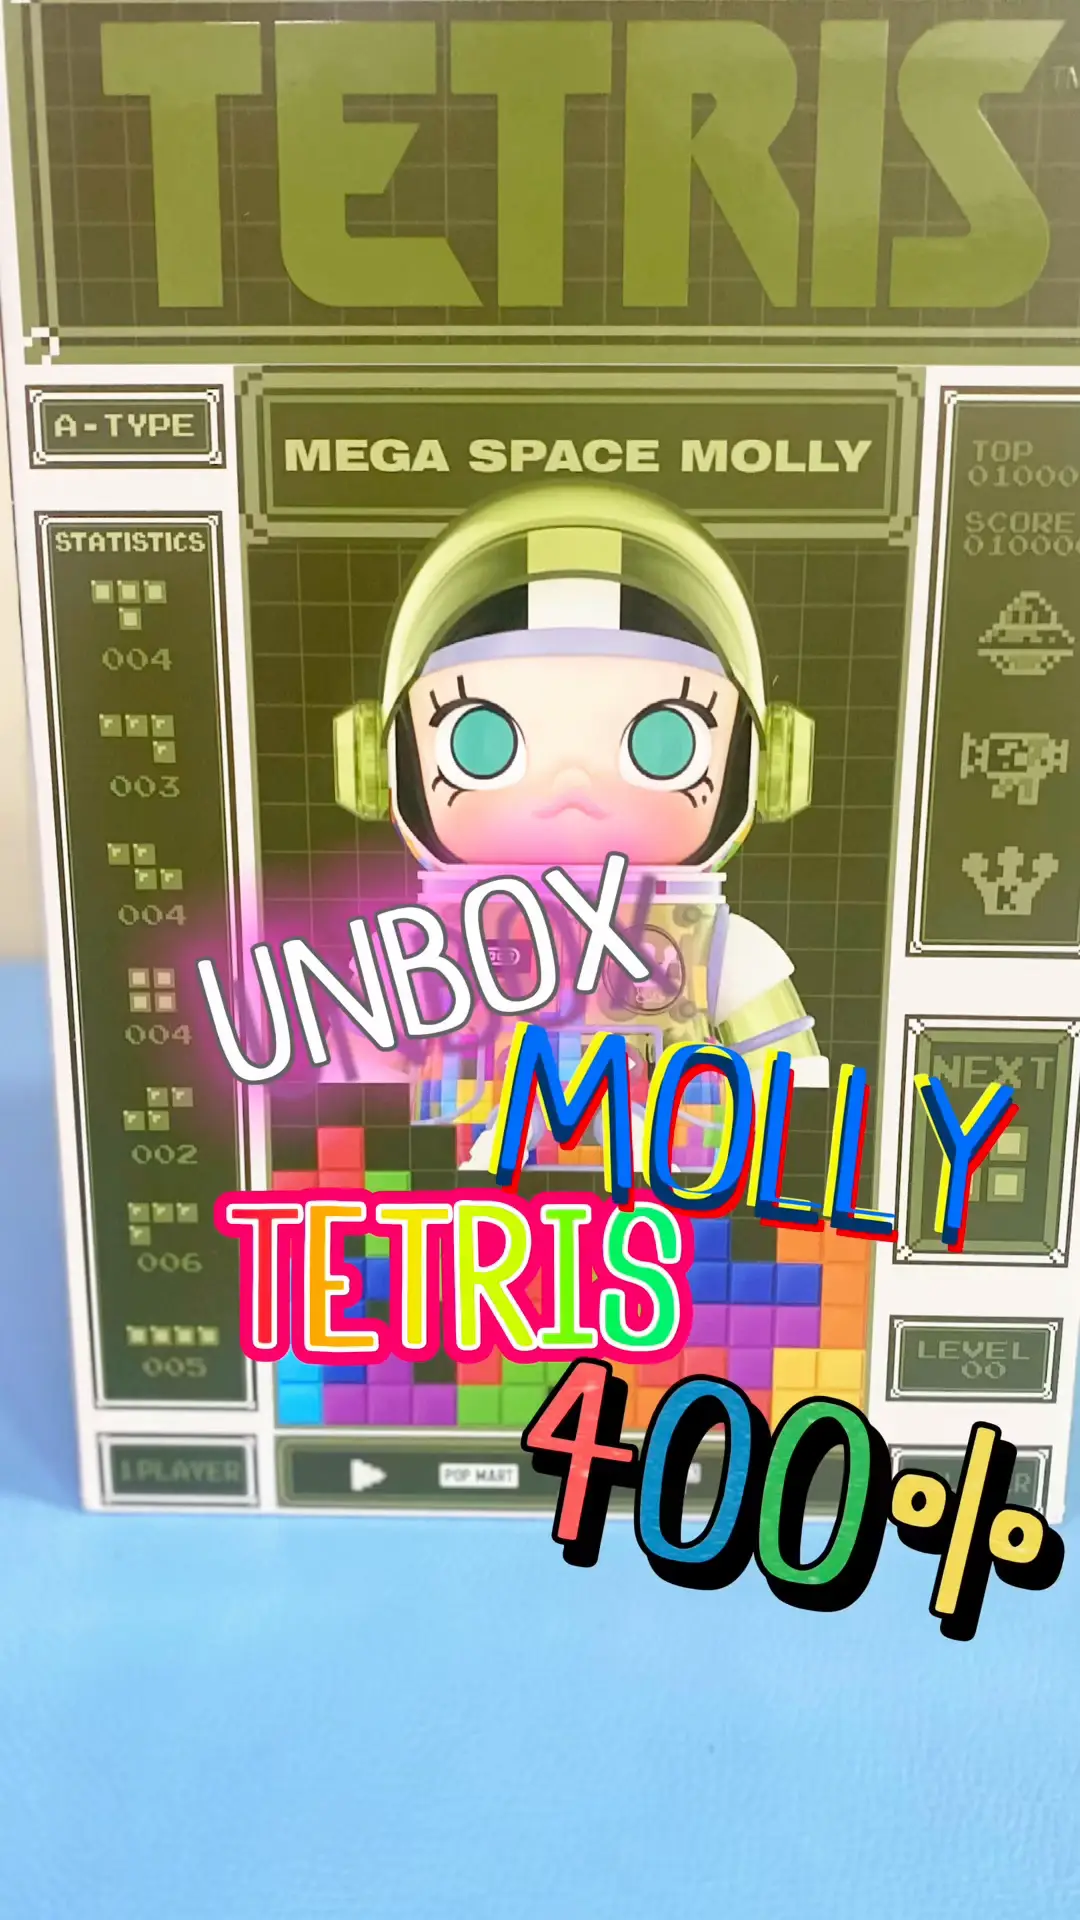 Unboxed Molly Tetris 400% Cute